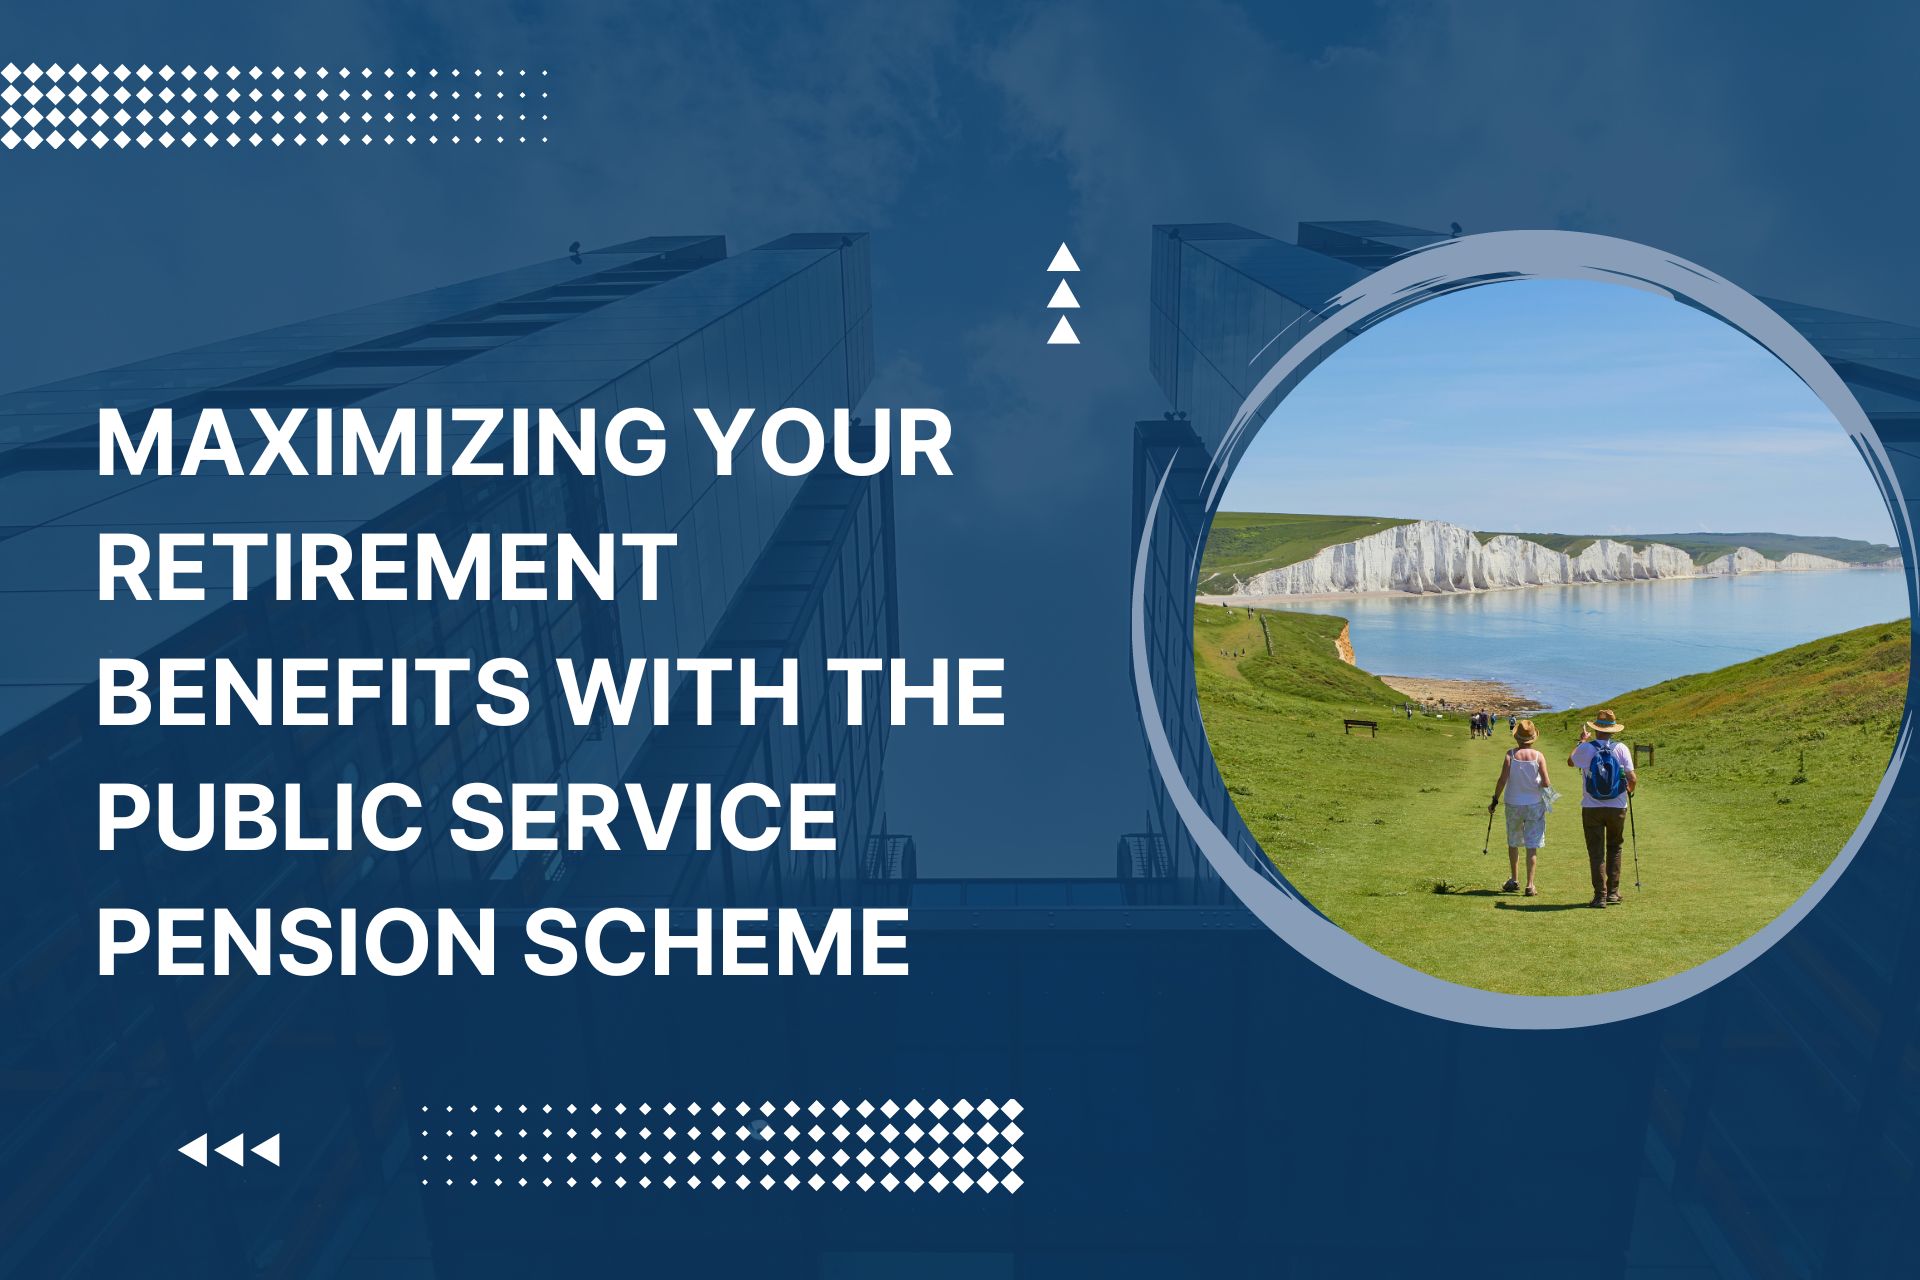 Public Service Pension Scheme